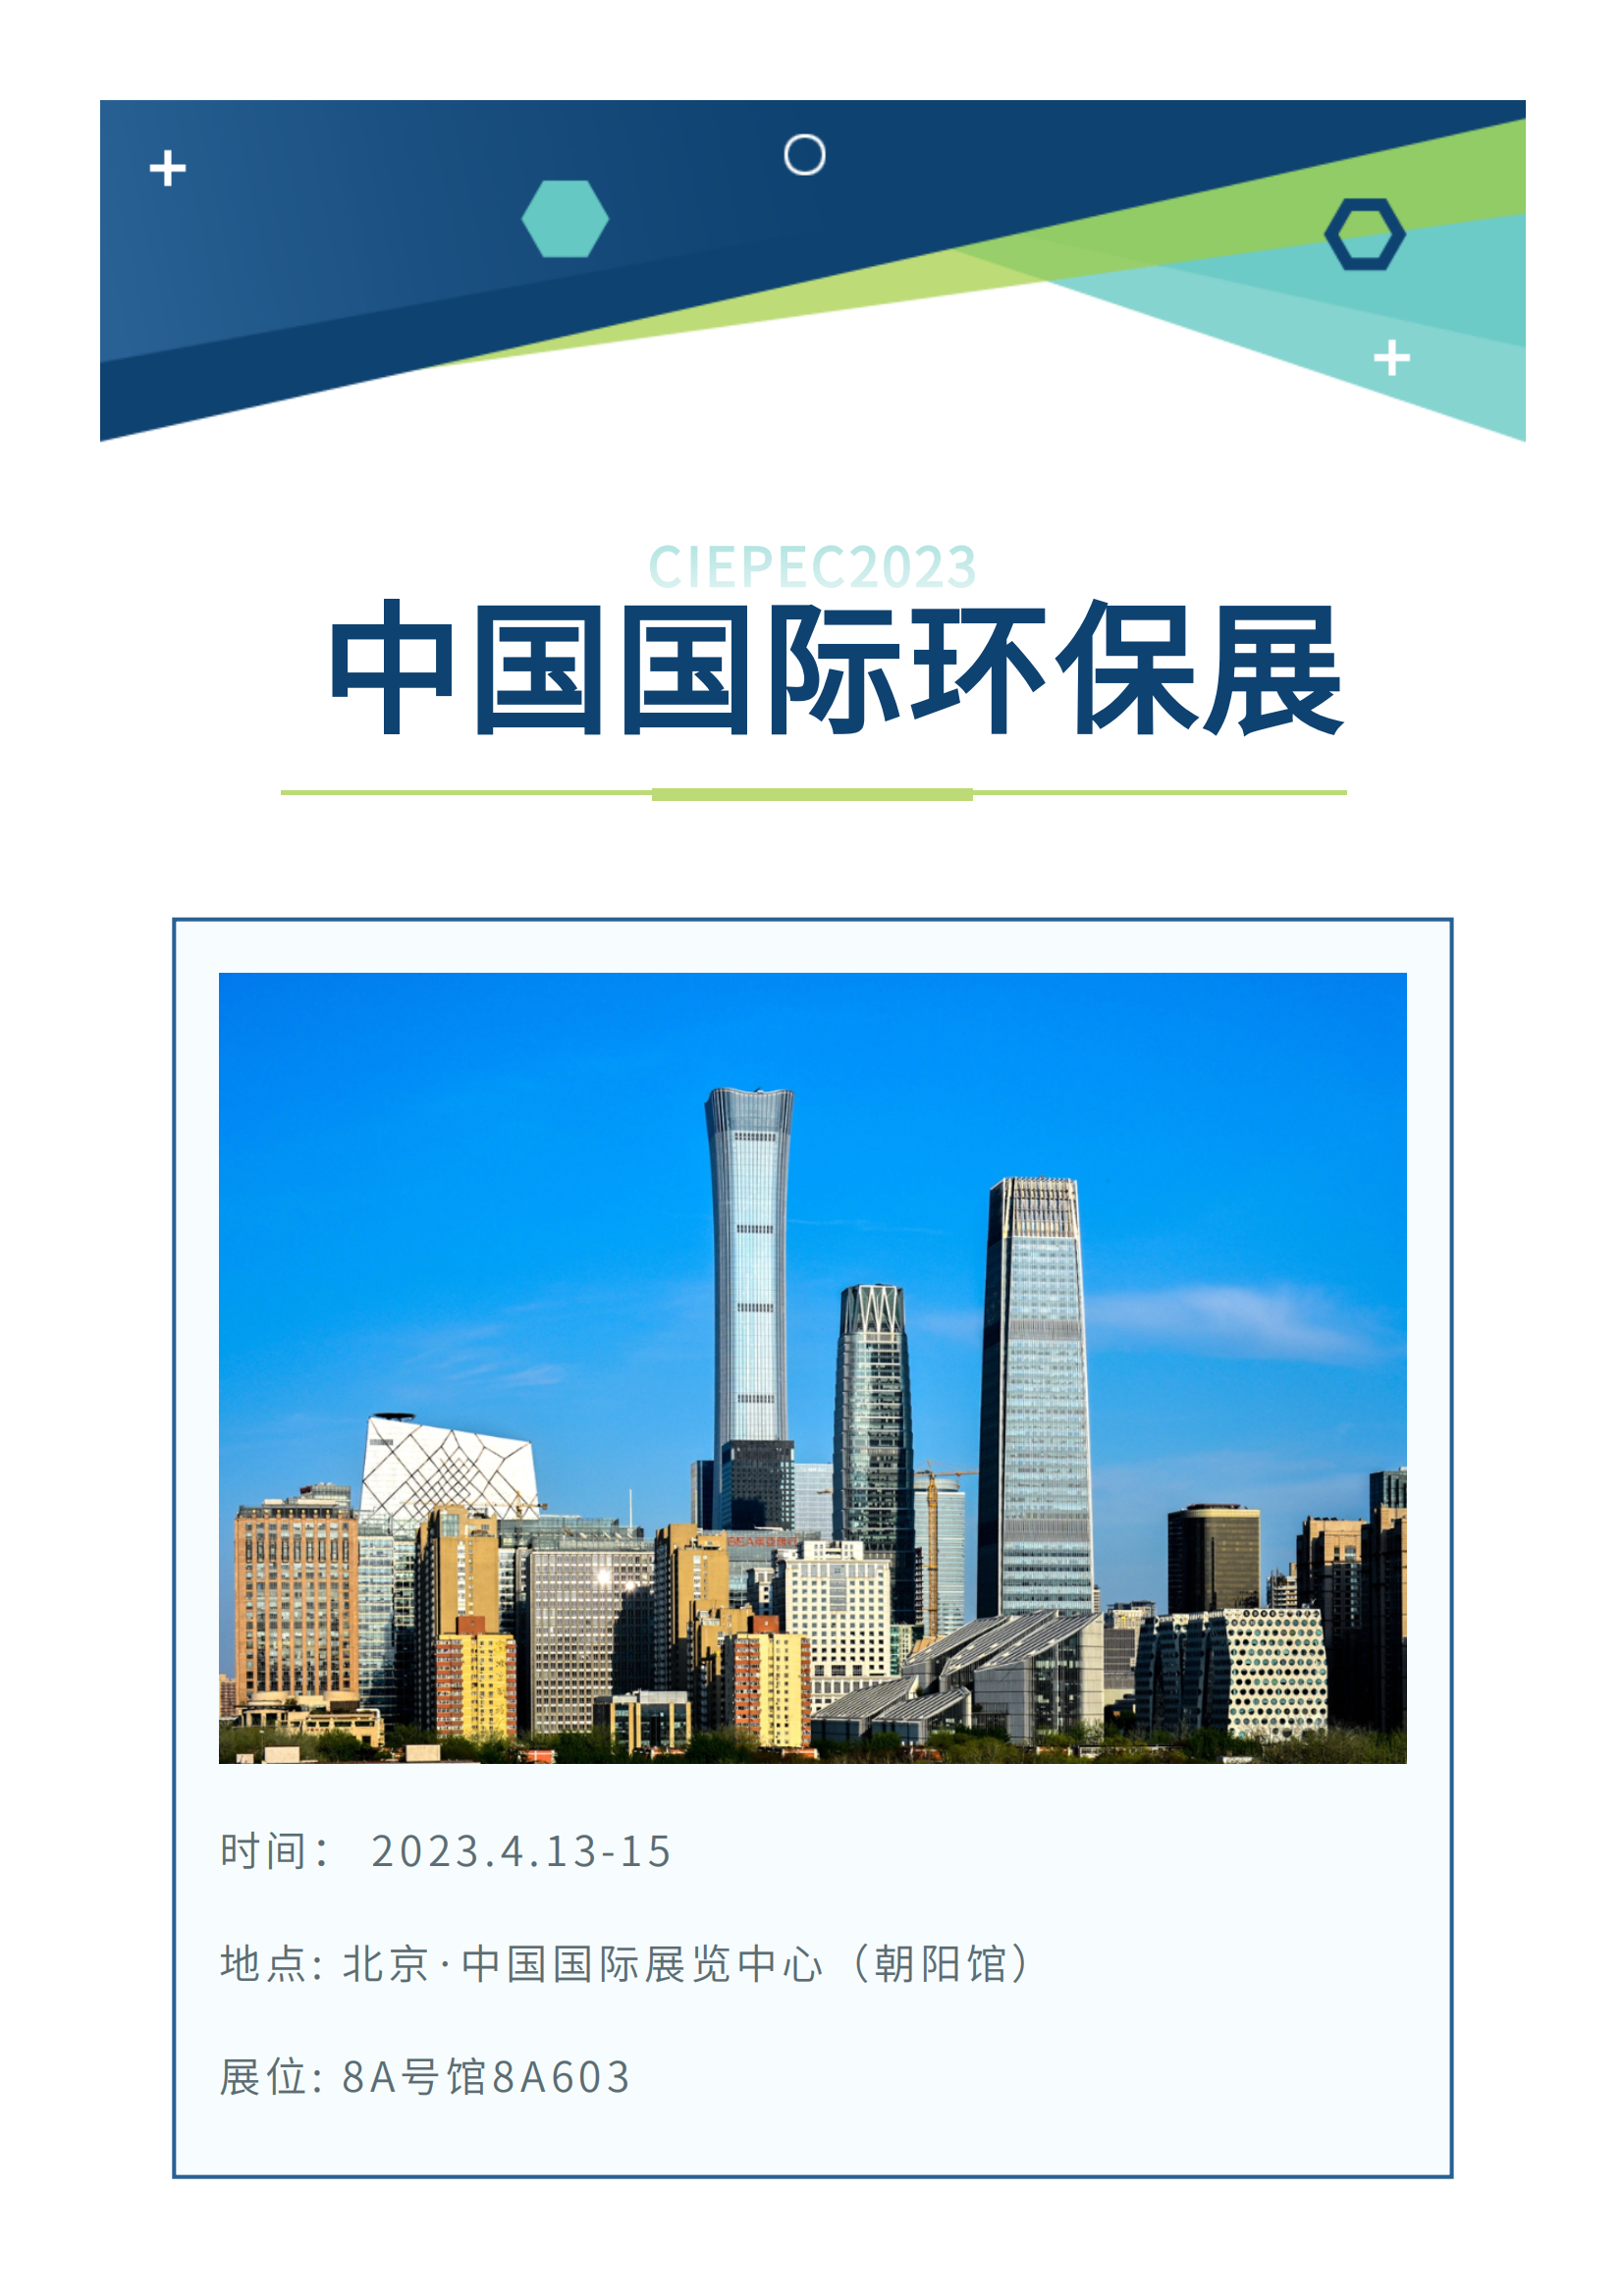 展会预告丨阳春四月，邀您共赴第二十一届中国国际环保展(图1)